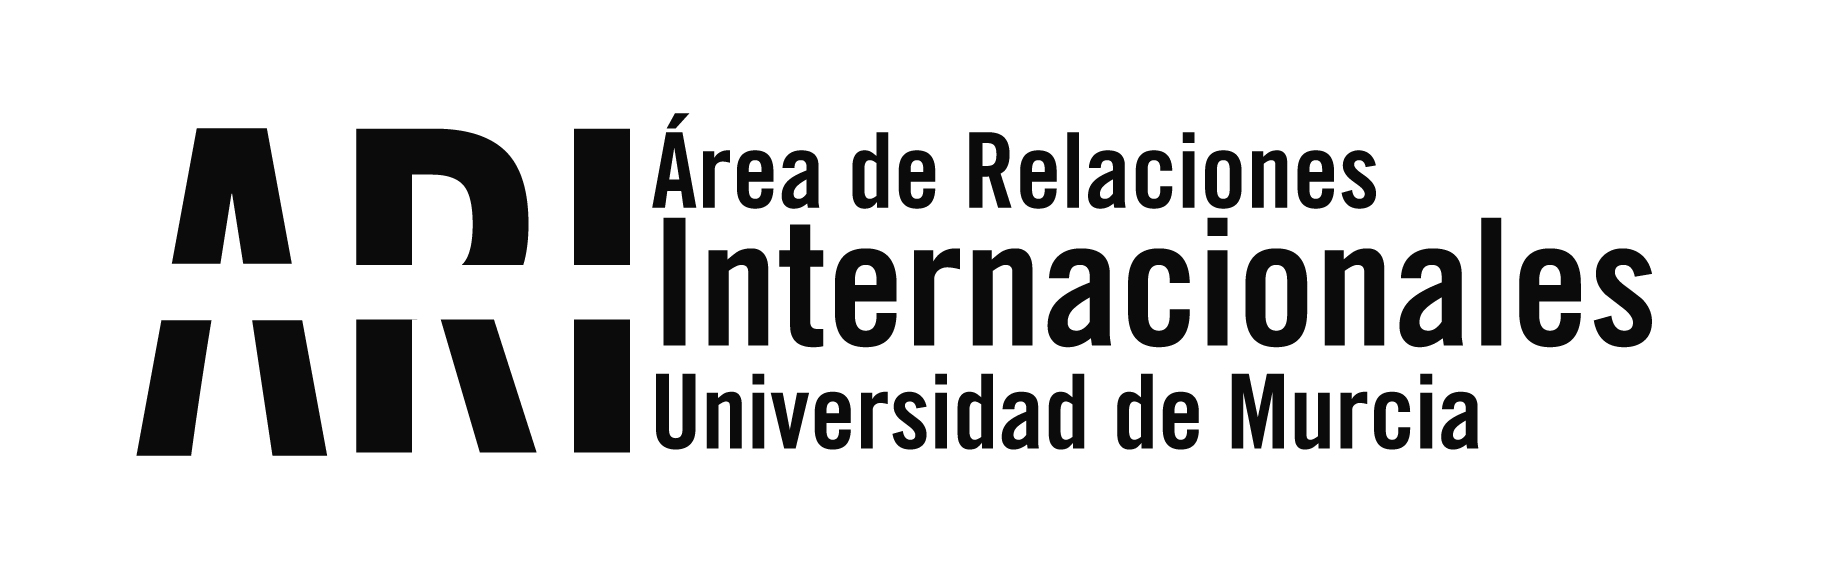 Publicados los ganadores VI Concurso Santander Ingenio - Universidad de Murcia "Bernardo Cascales" - Área de Relaciones Internacionales